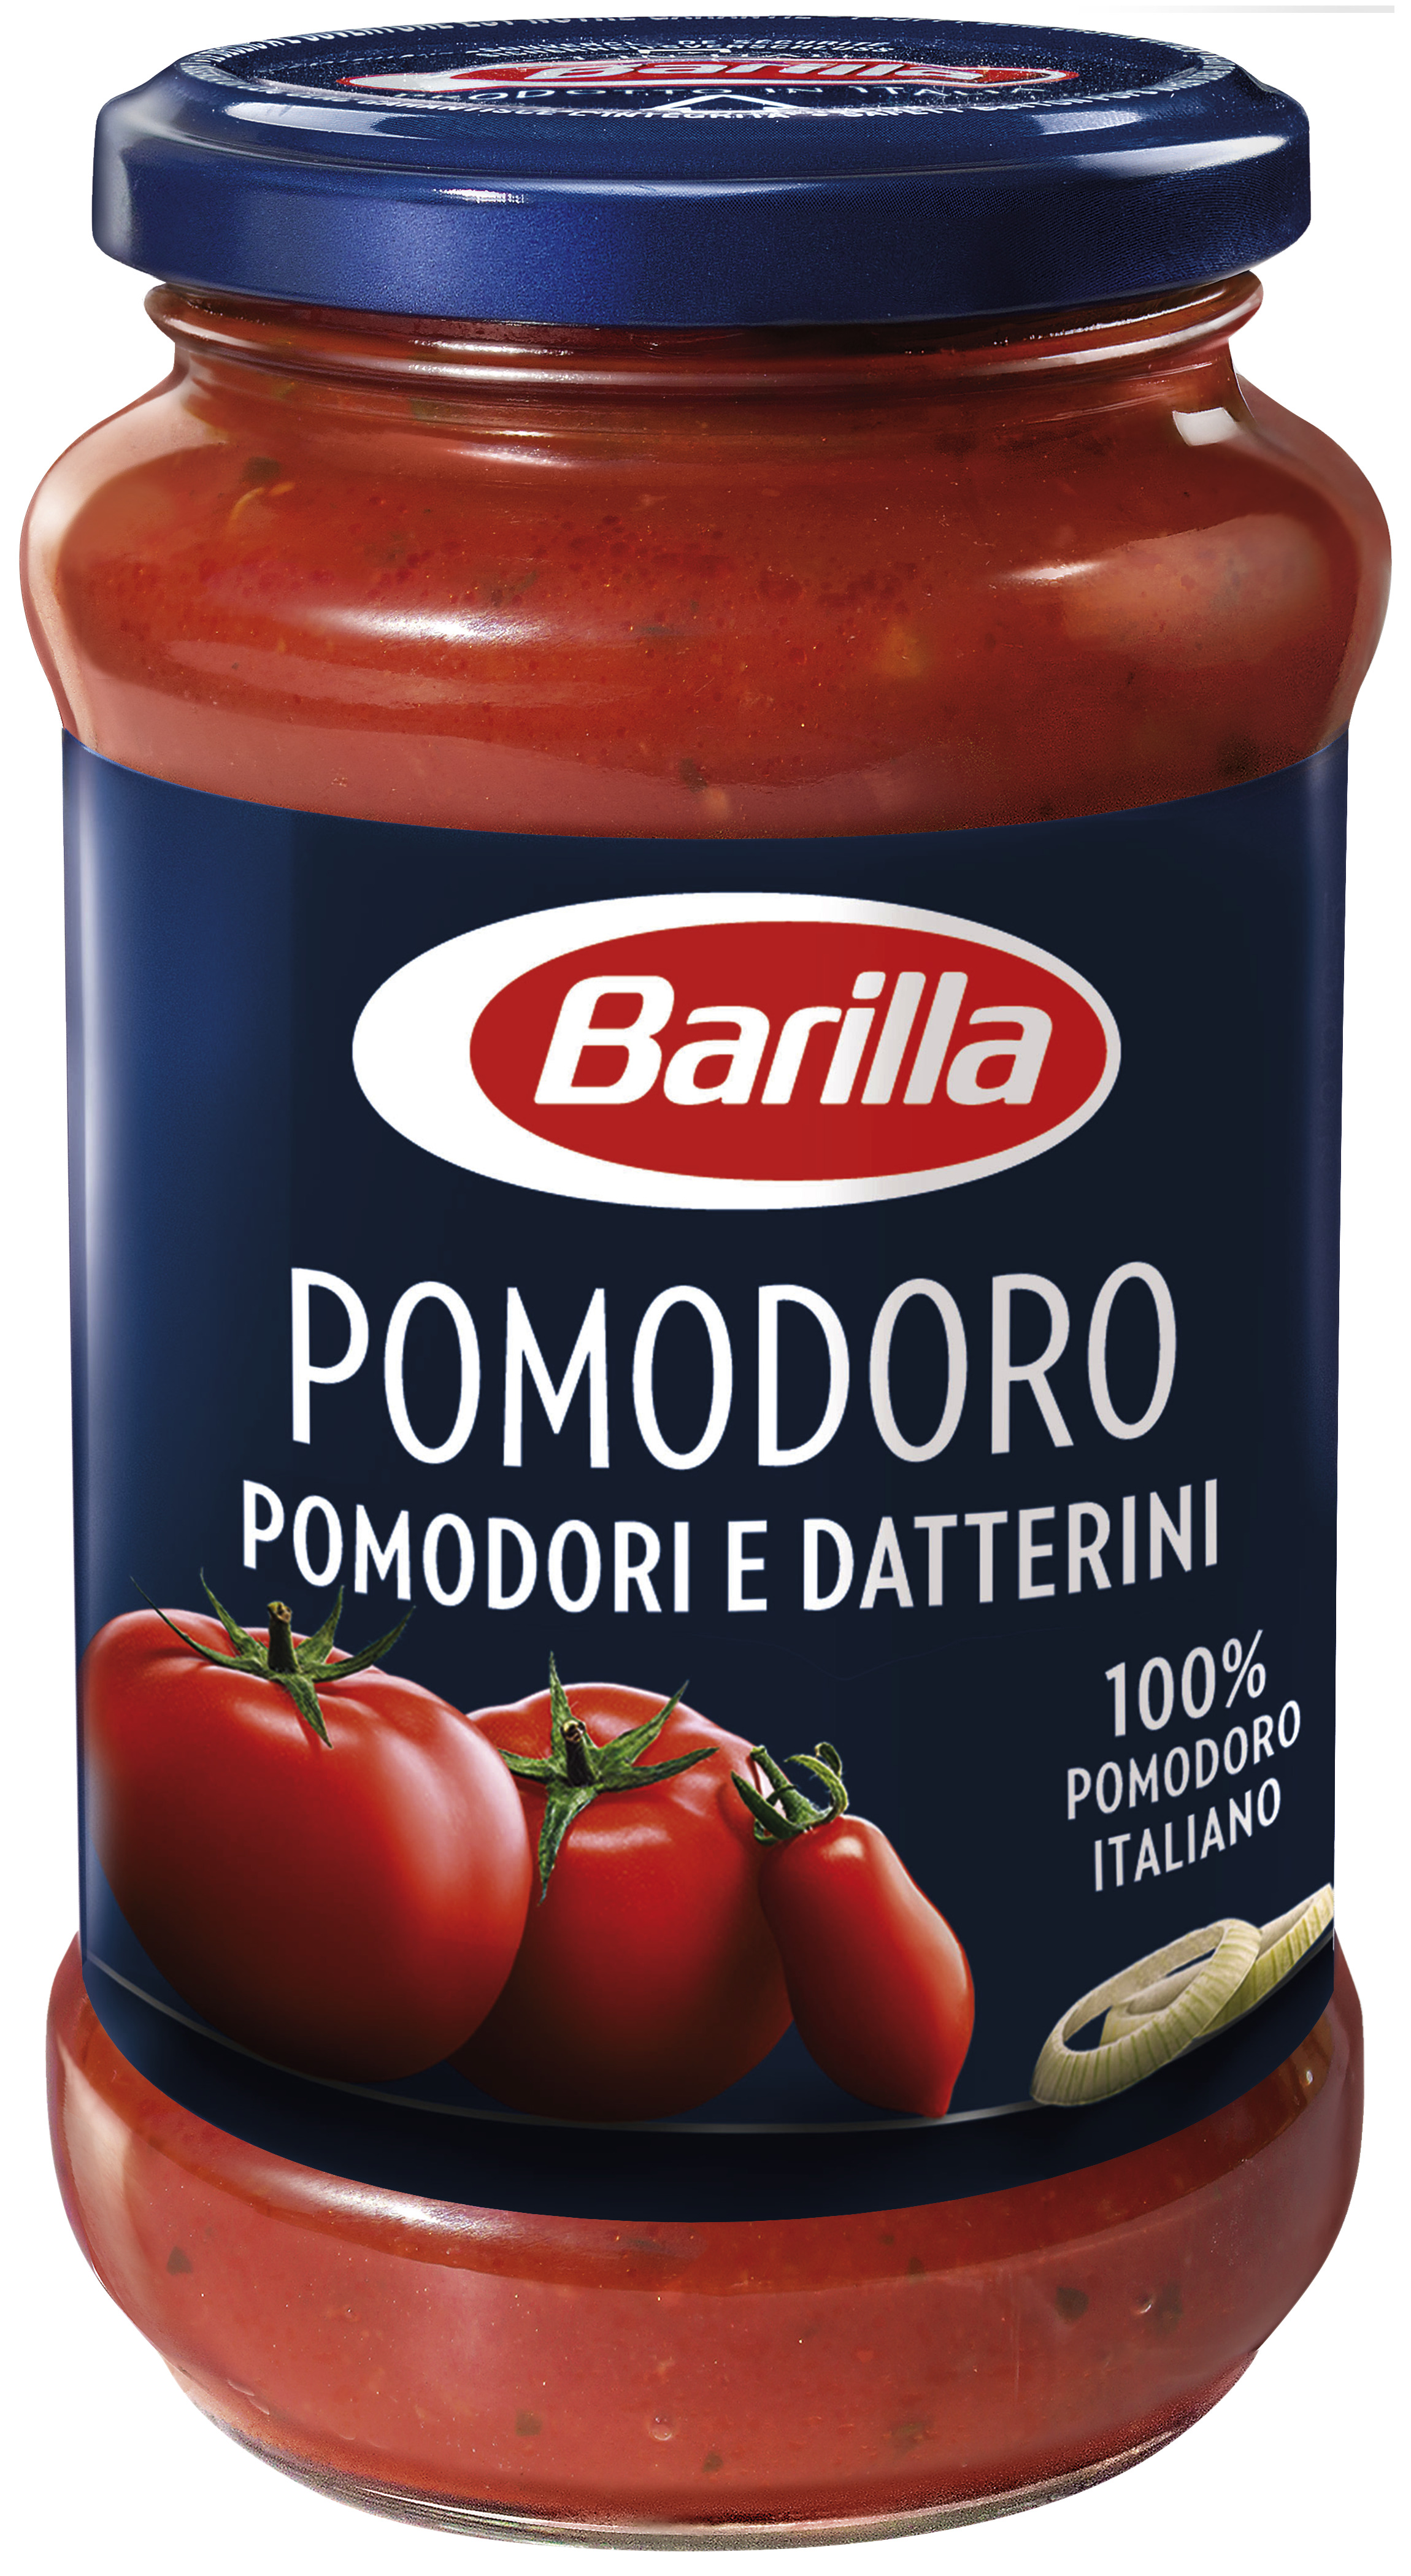 Barilla Pastasauce Pomodoro TOMATENSAUCE MIT TOMATEN UND DATTELTOMATEN 400g